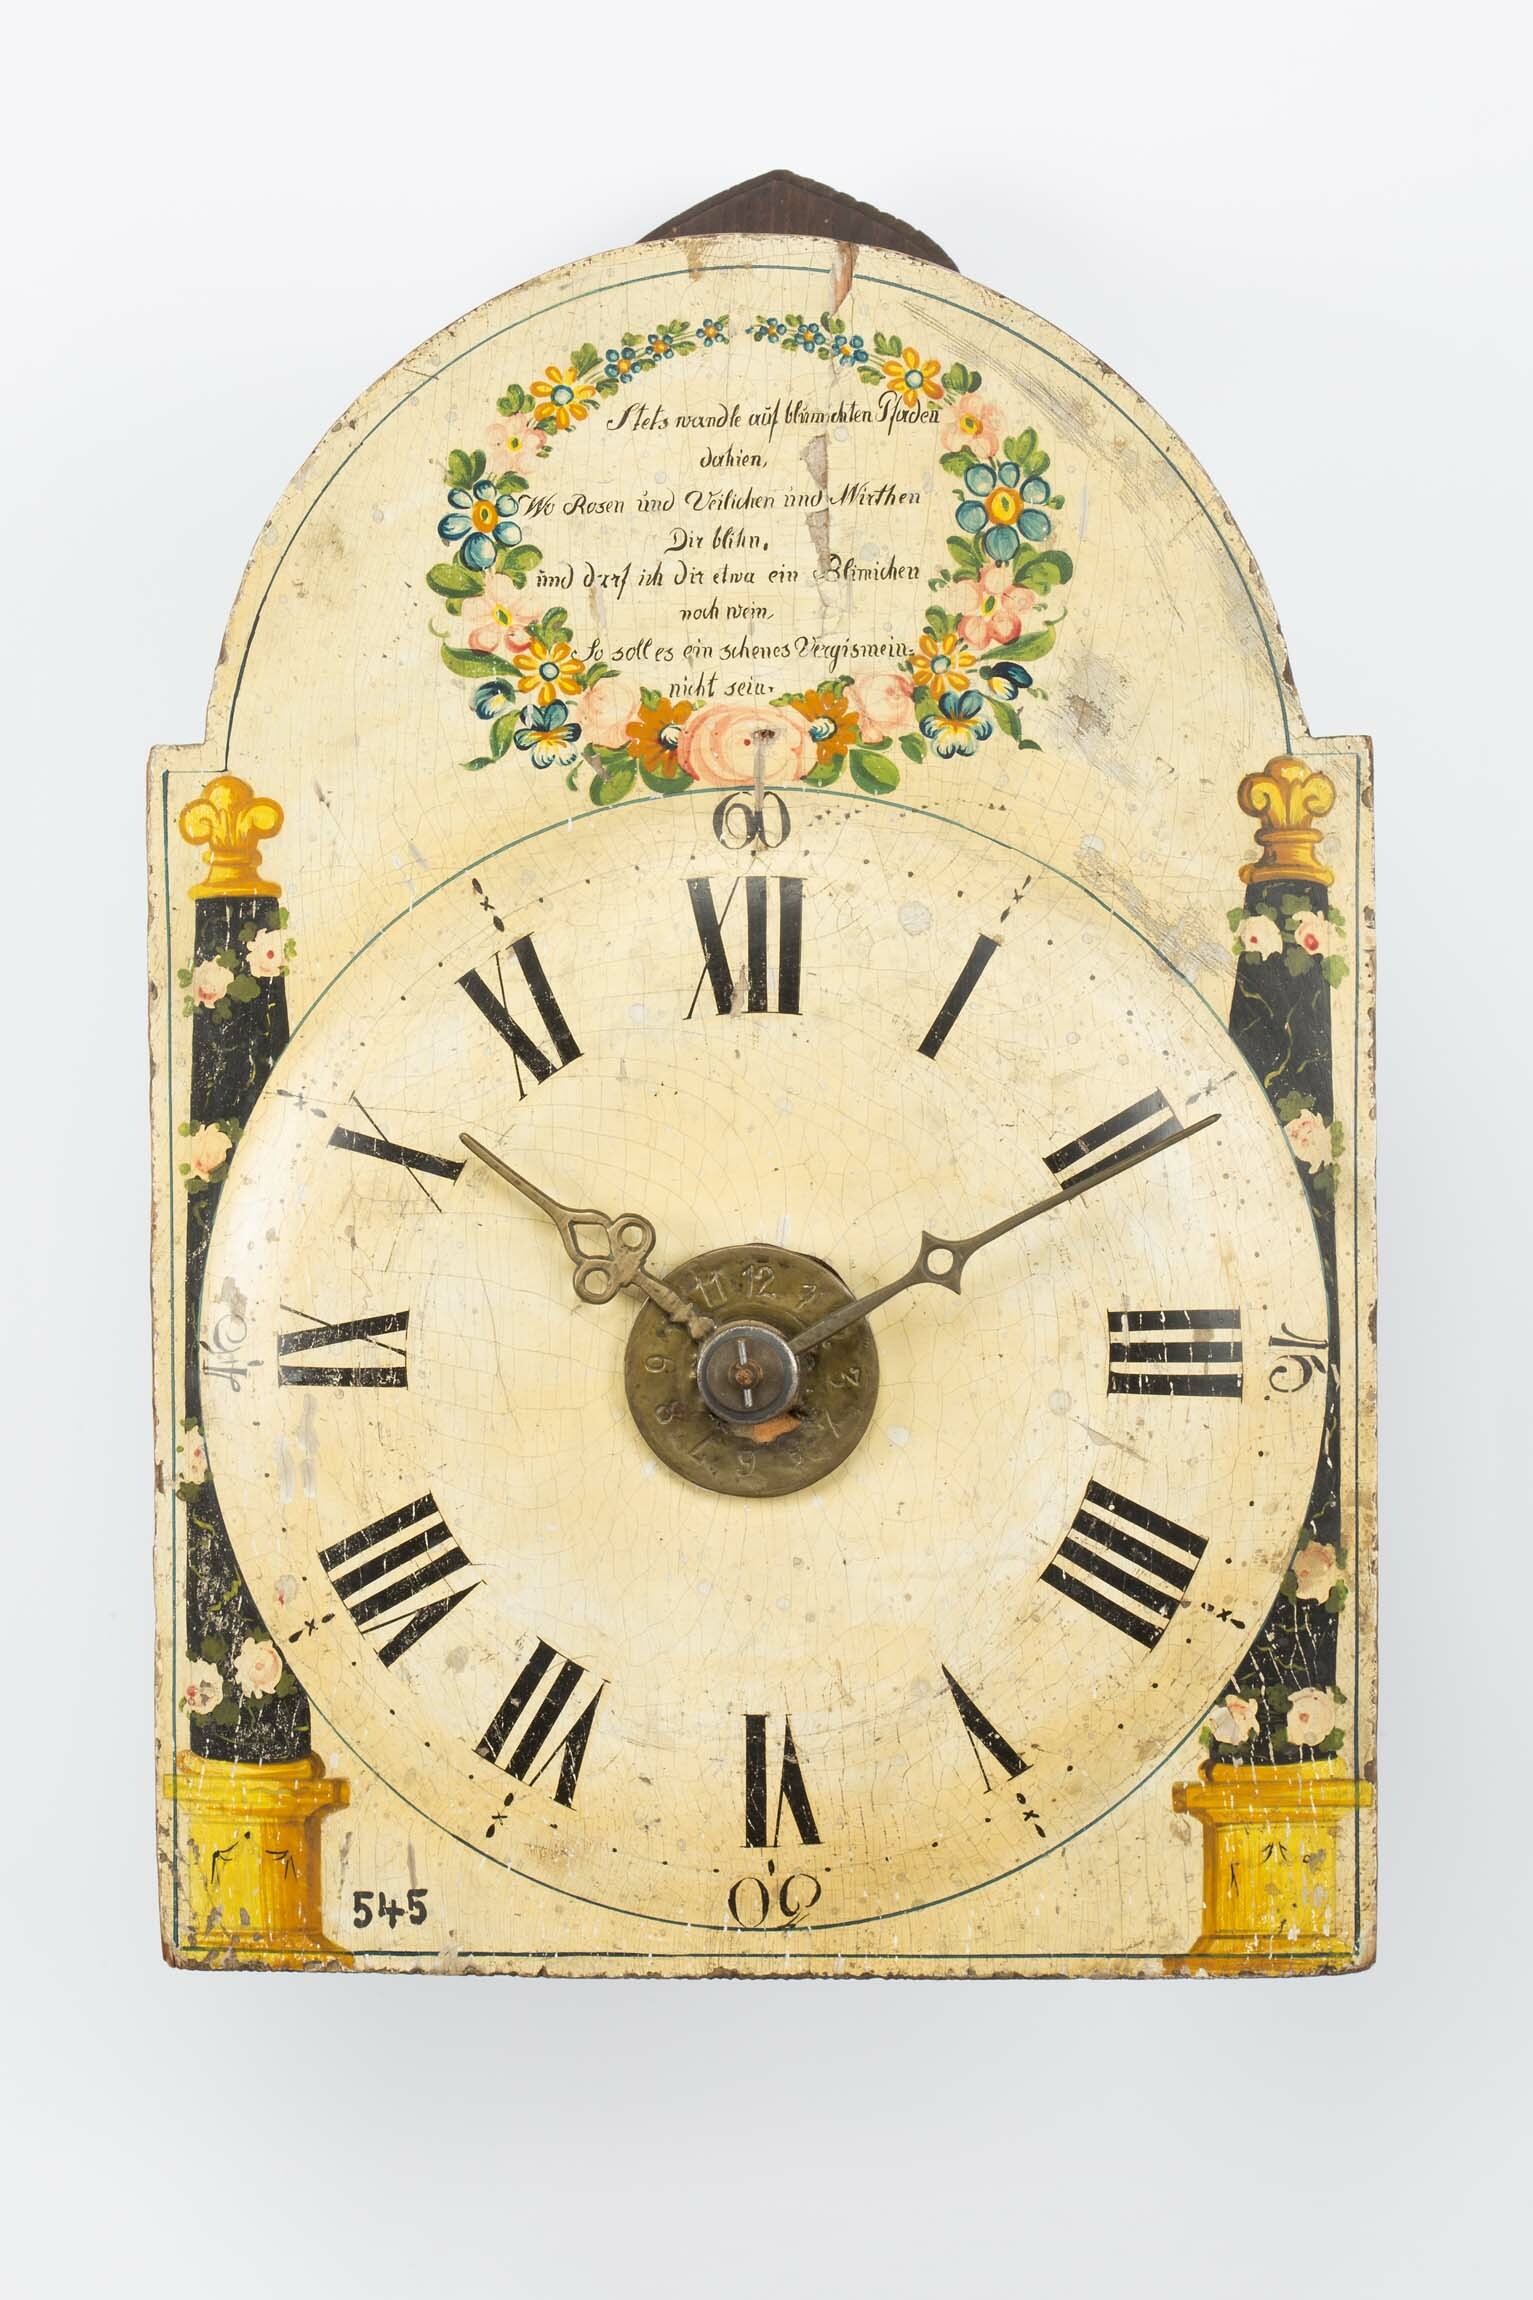 Lackschilduhr, Werk: Lorenz Villinger, Ibental, um 1780, Schild: Schwarzwald, um 1820 (Deutsches Uhrenmuseum CC BY-SA)